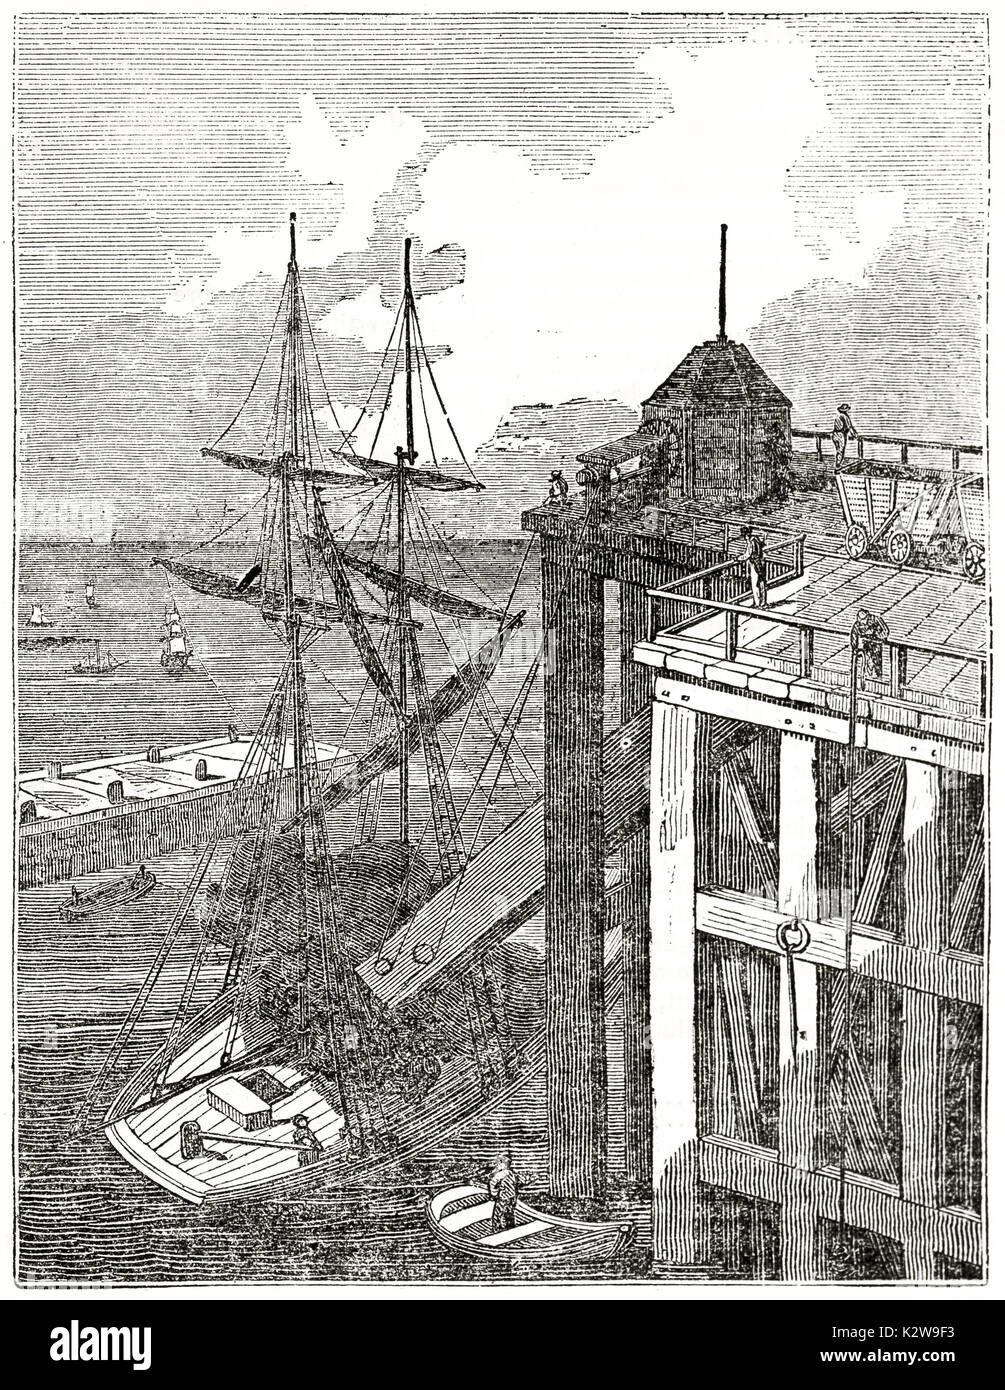 Alte Abbildung: Einlegen von Kohle auf einem Schiff im Seaham Hafen, England. Von unbekannter Autor, auf Penny Magazine, London, 1835 veröffentlicht. Stockfoto